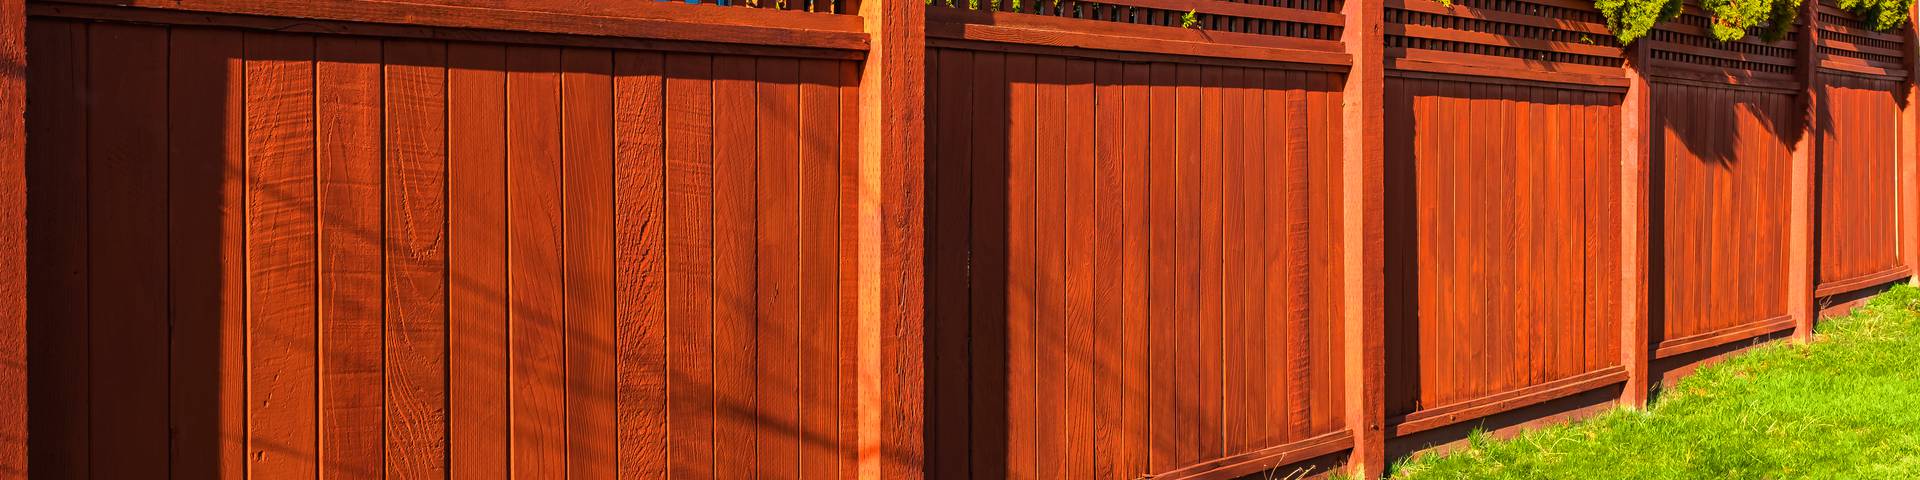 Zlecenia na ogrodzenia drewniane Turek